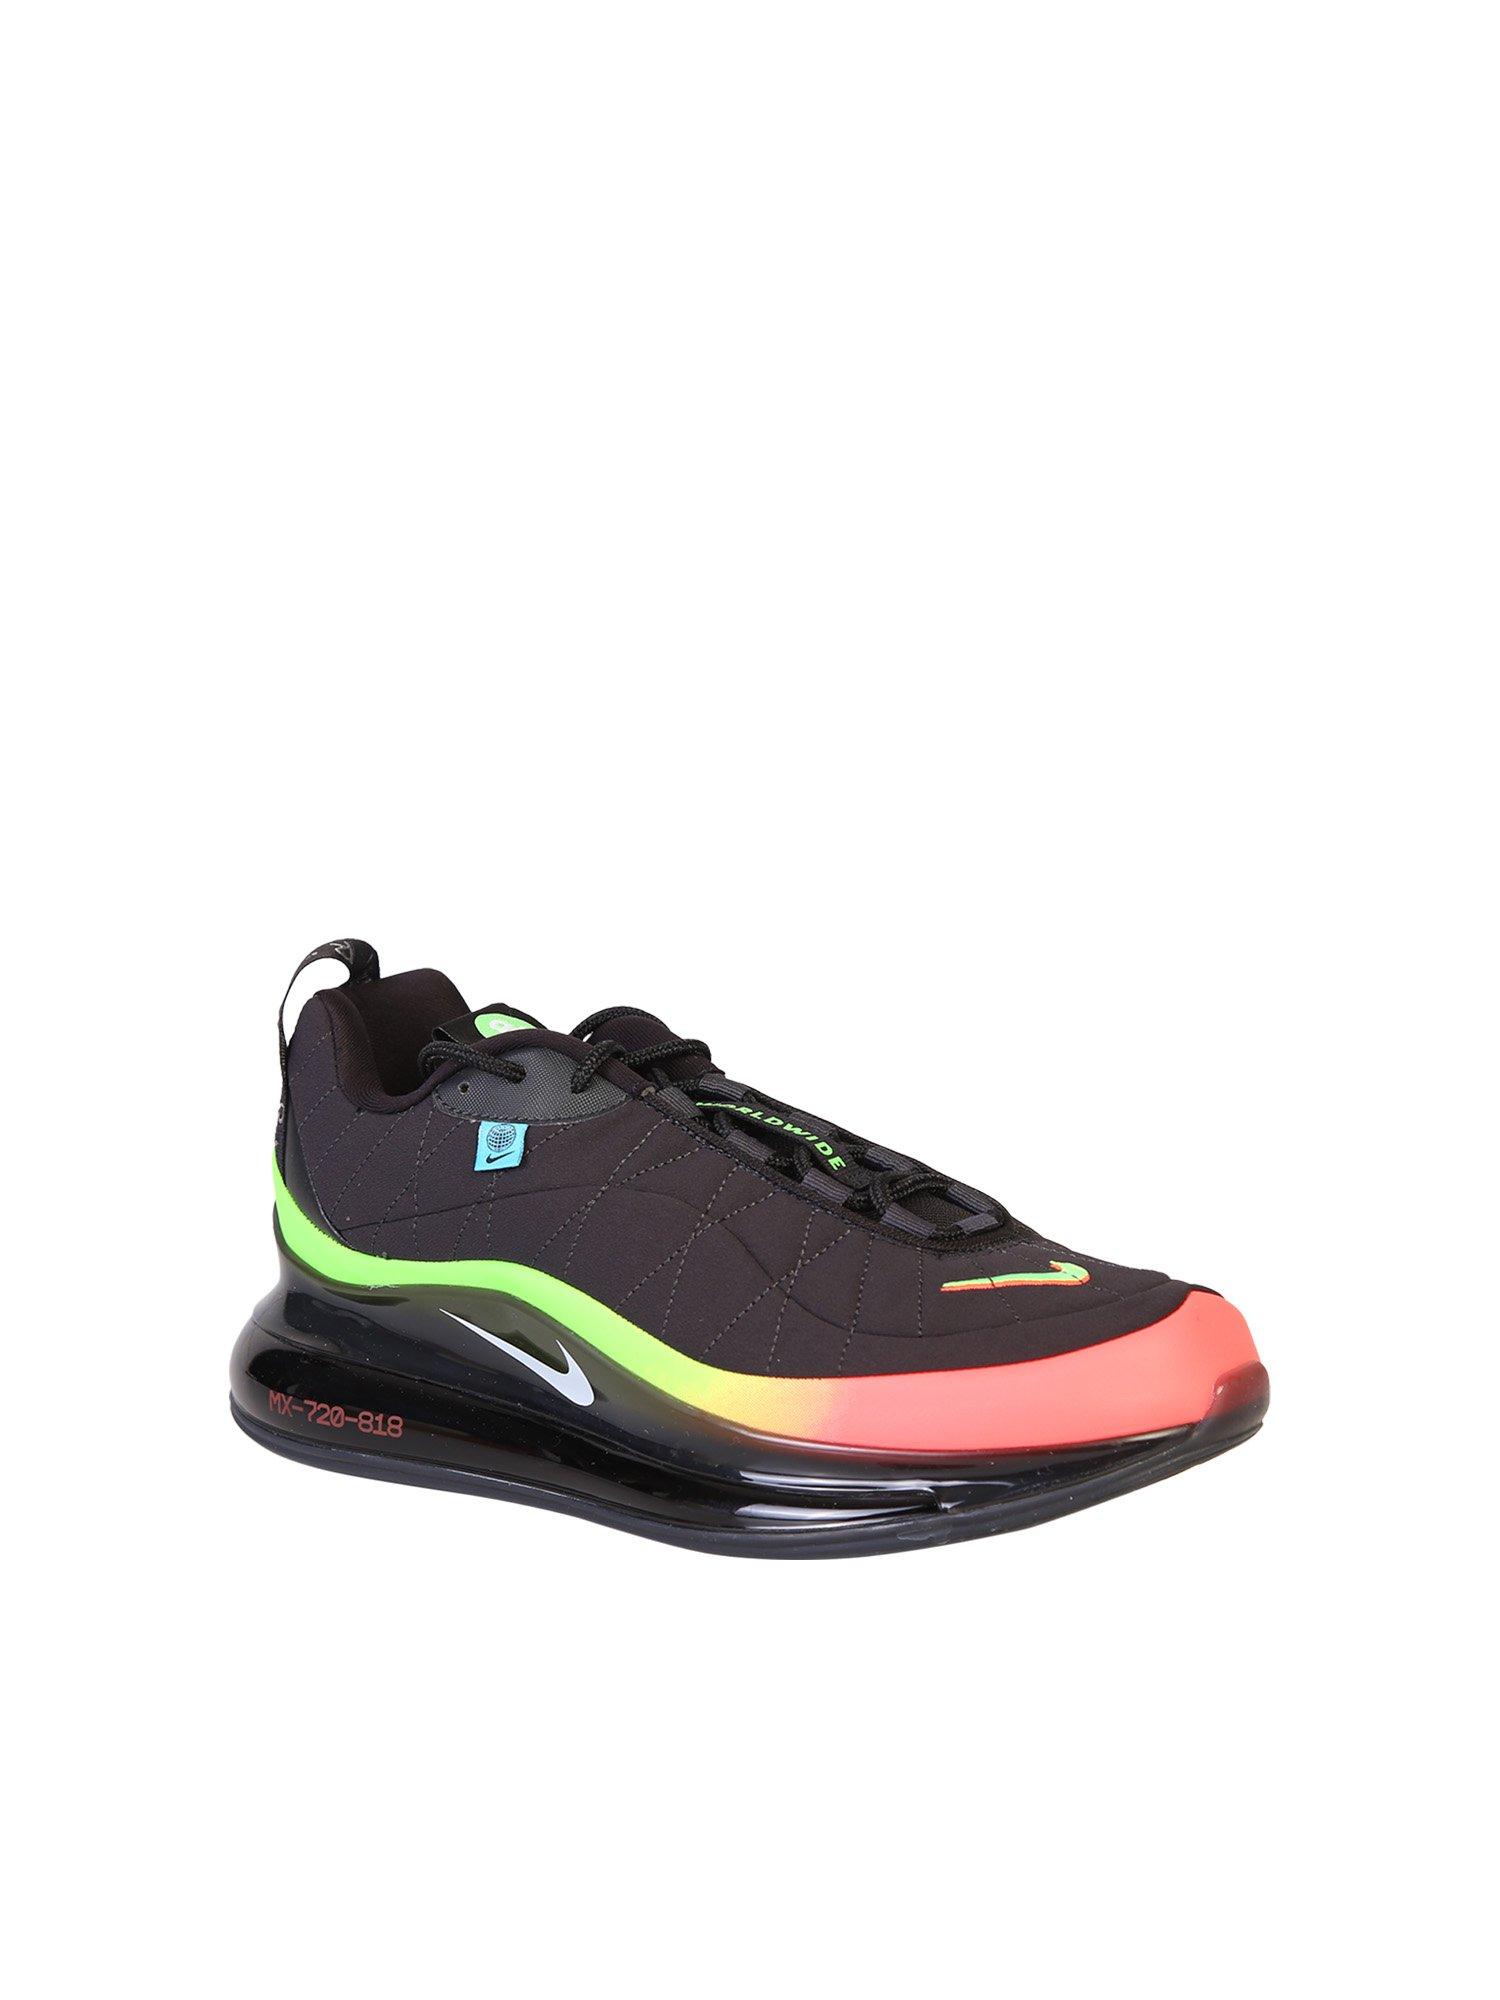 Nike Mx-720-818 Sneakers in Black for Men